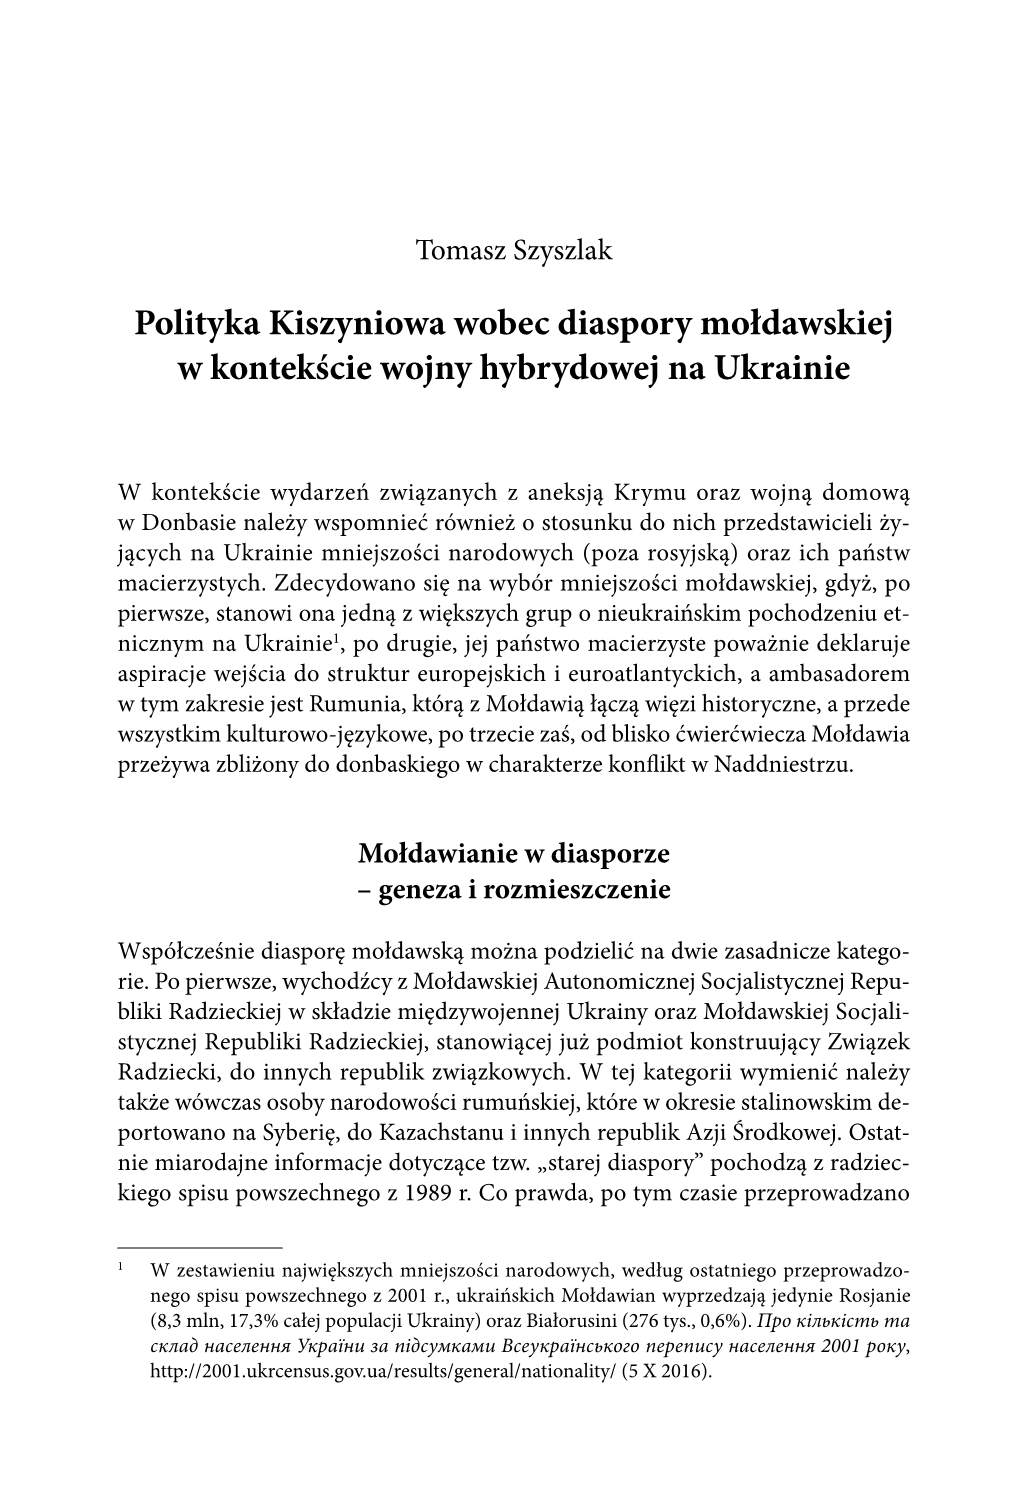 Polityka Kiszyniowa Wobec Diaspory Mołdawskiej W Kontekście Wojny Hybrydowej Na Ukrainie